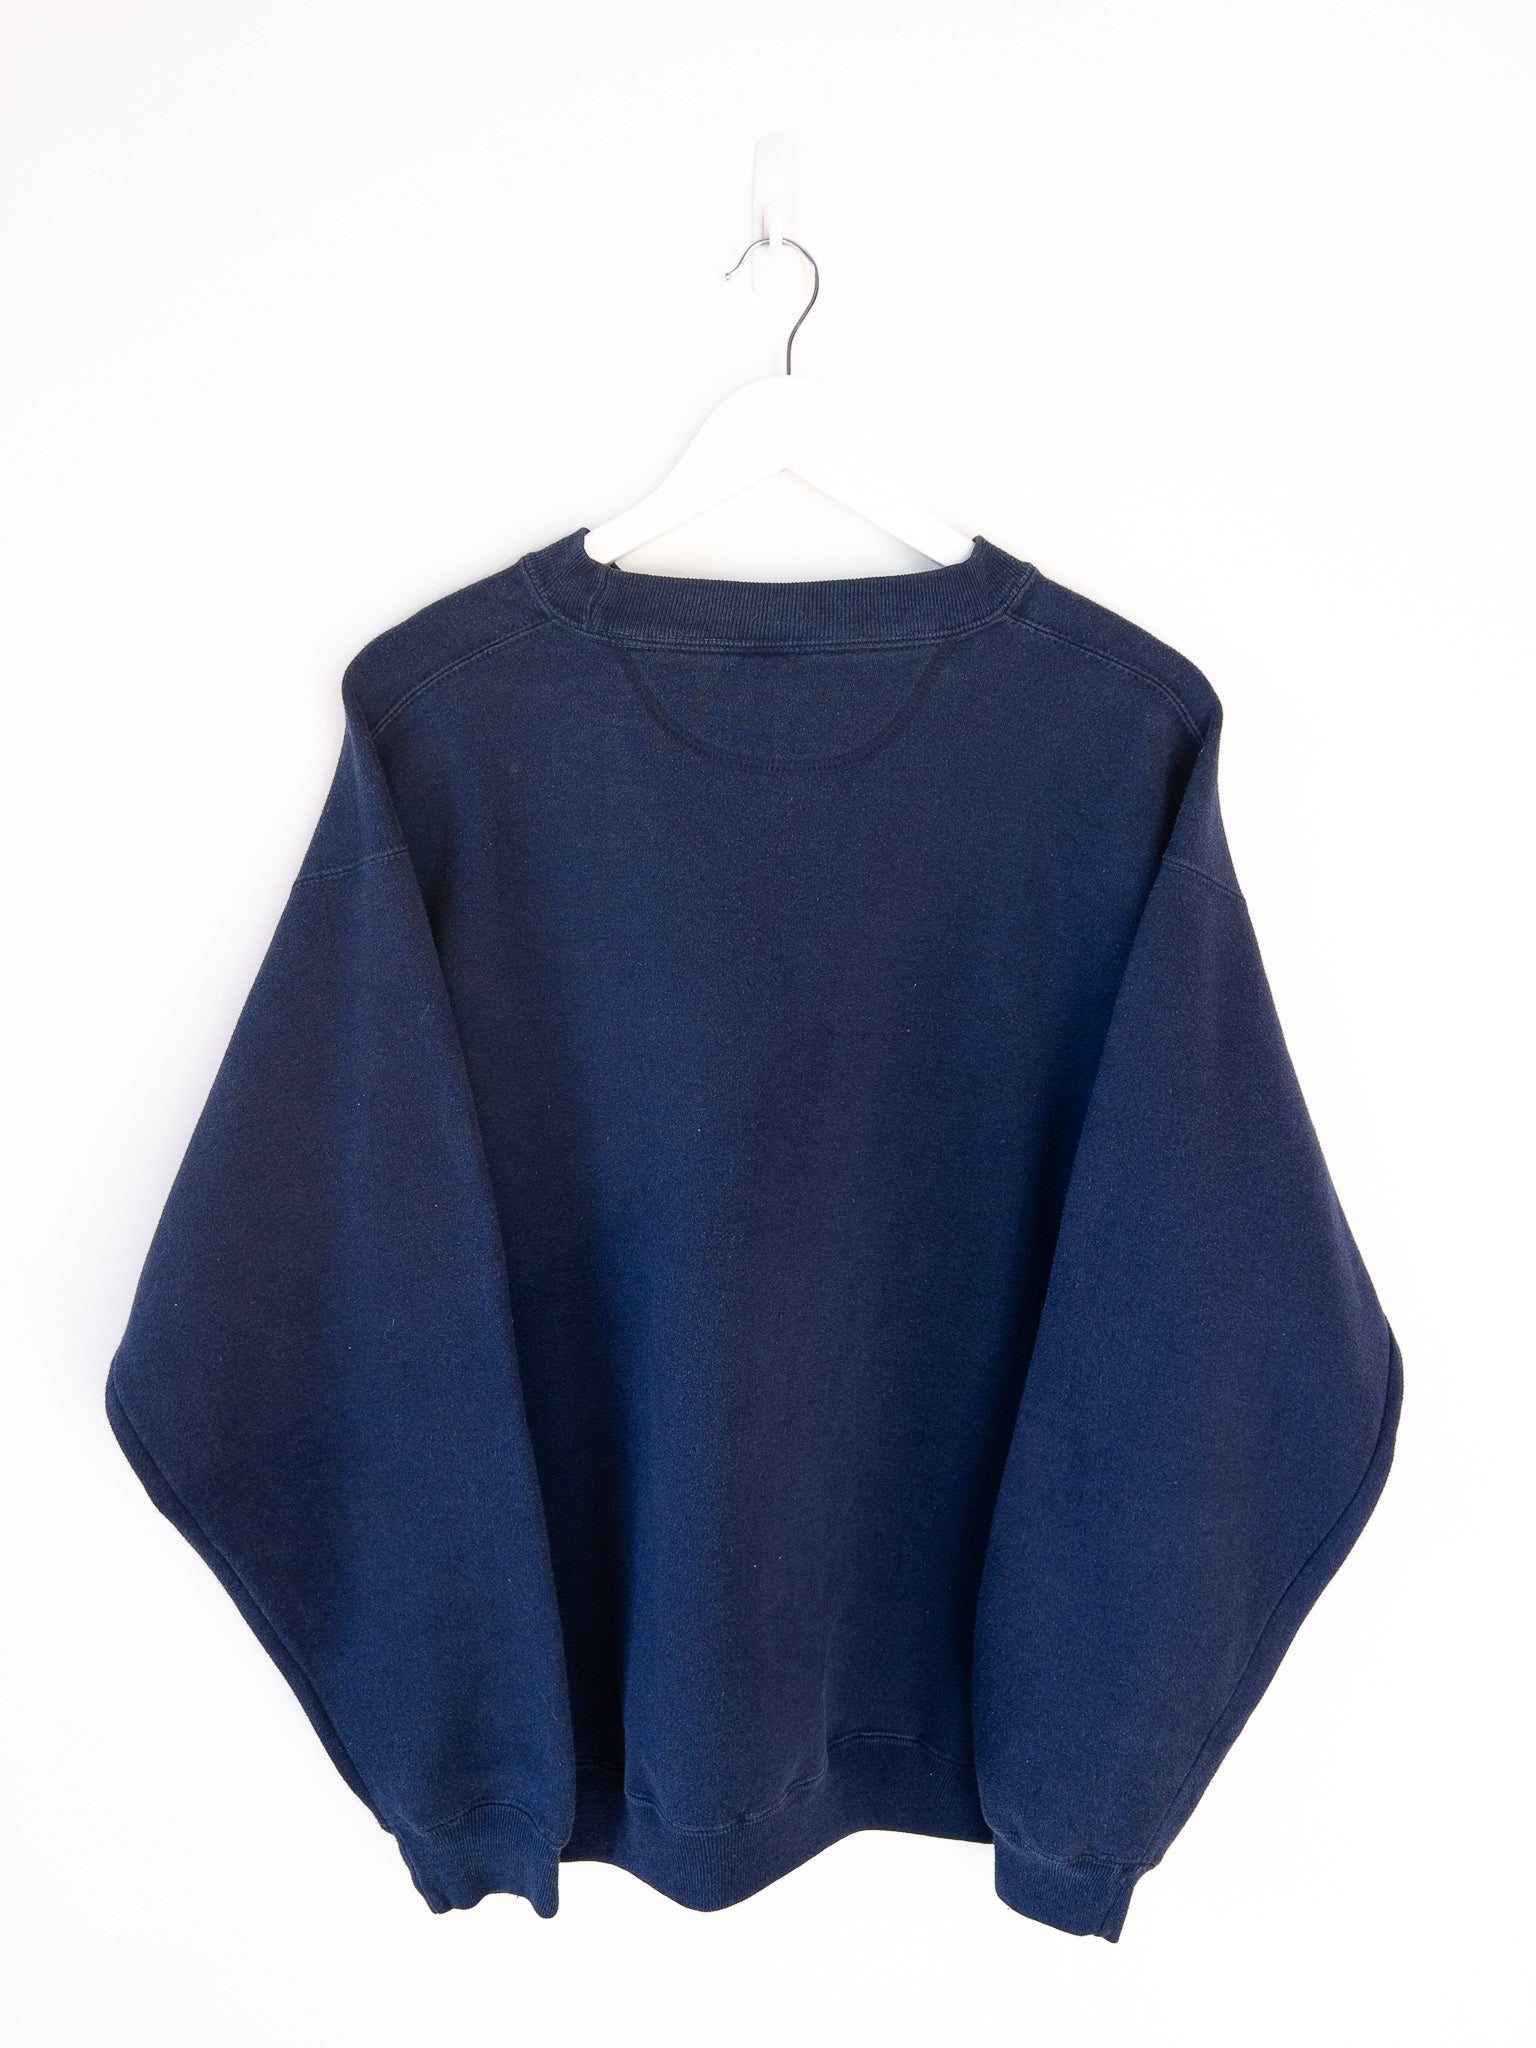 Vintage Georgetown Hoyas Sweatshirt (XL)